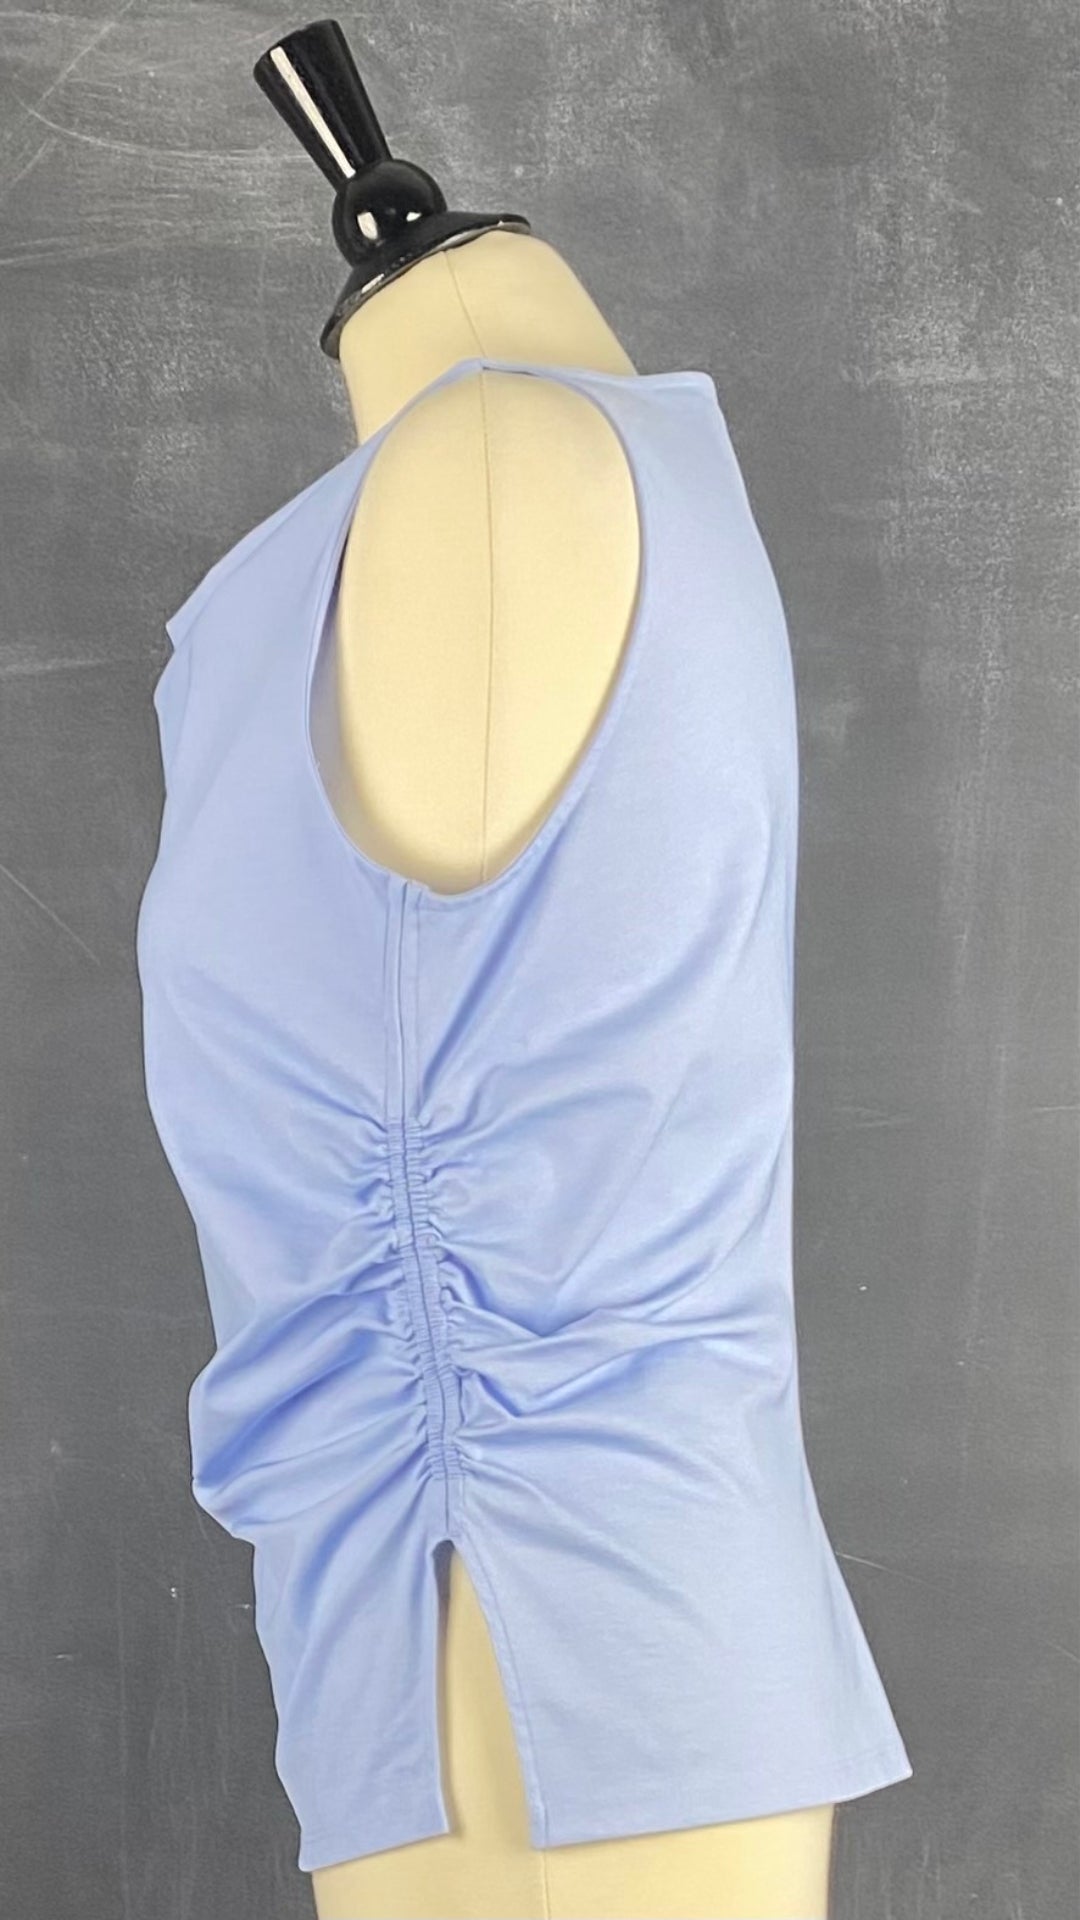 Camisole bleu doux plissée Cos, taille medium. Vue de côté.